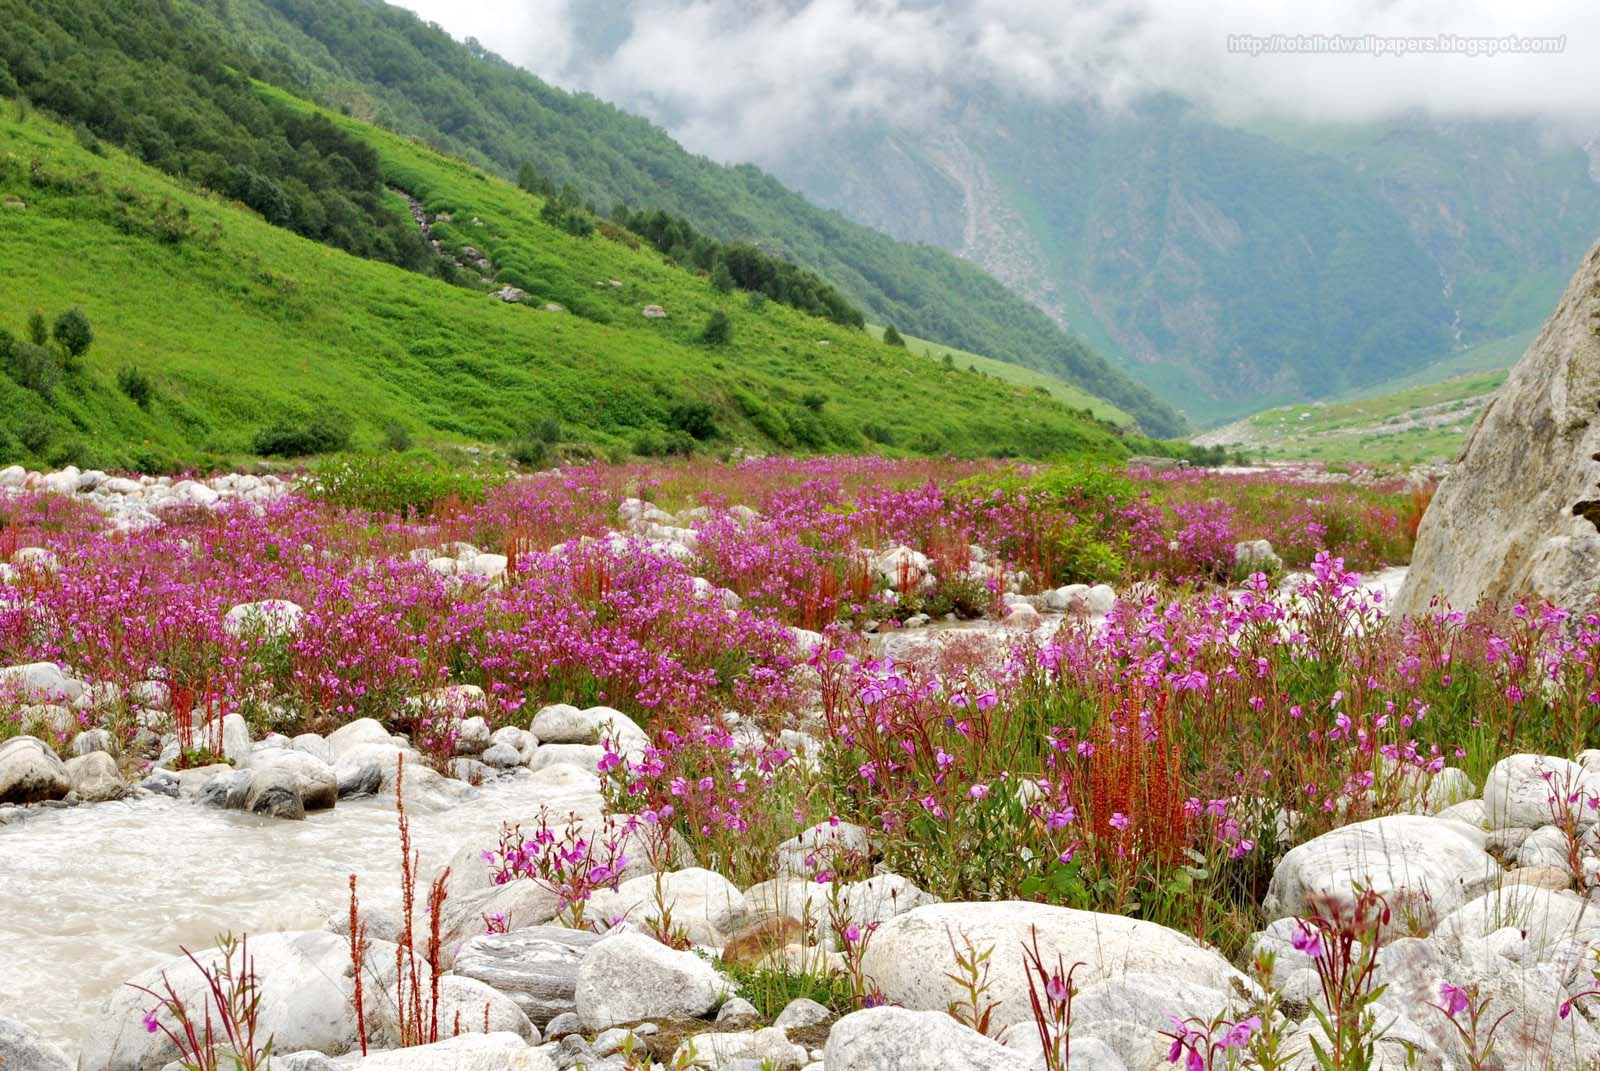 Flowers valley. Национальный парк Долины цветов, Уттаракханд. Национальный парк Долина цветов. Национальные парки Нанда-Деви и «Долина цветов». Долина цветов (Valley of Flowers National Park) — национальный парк в Индии.